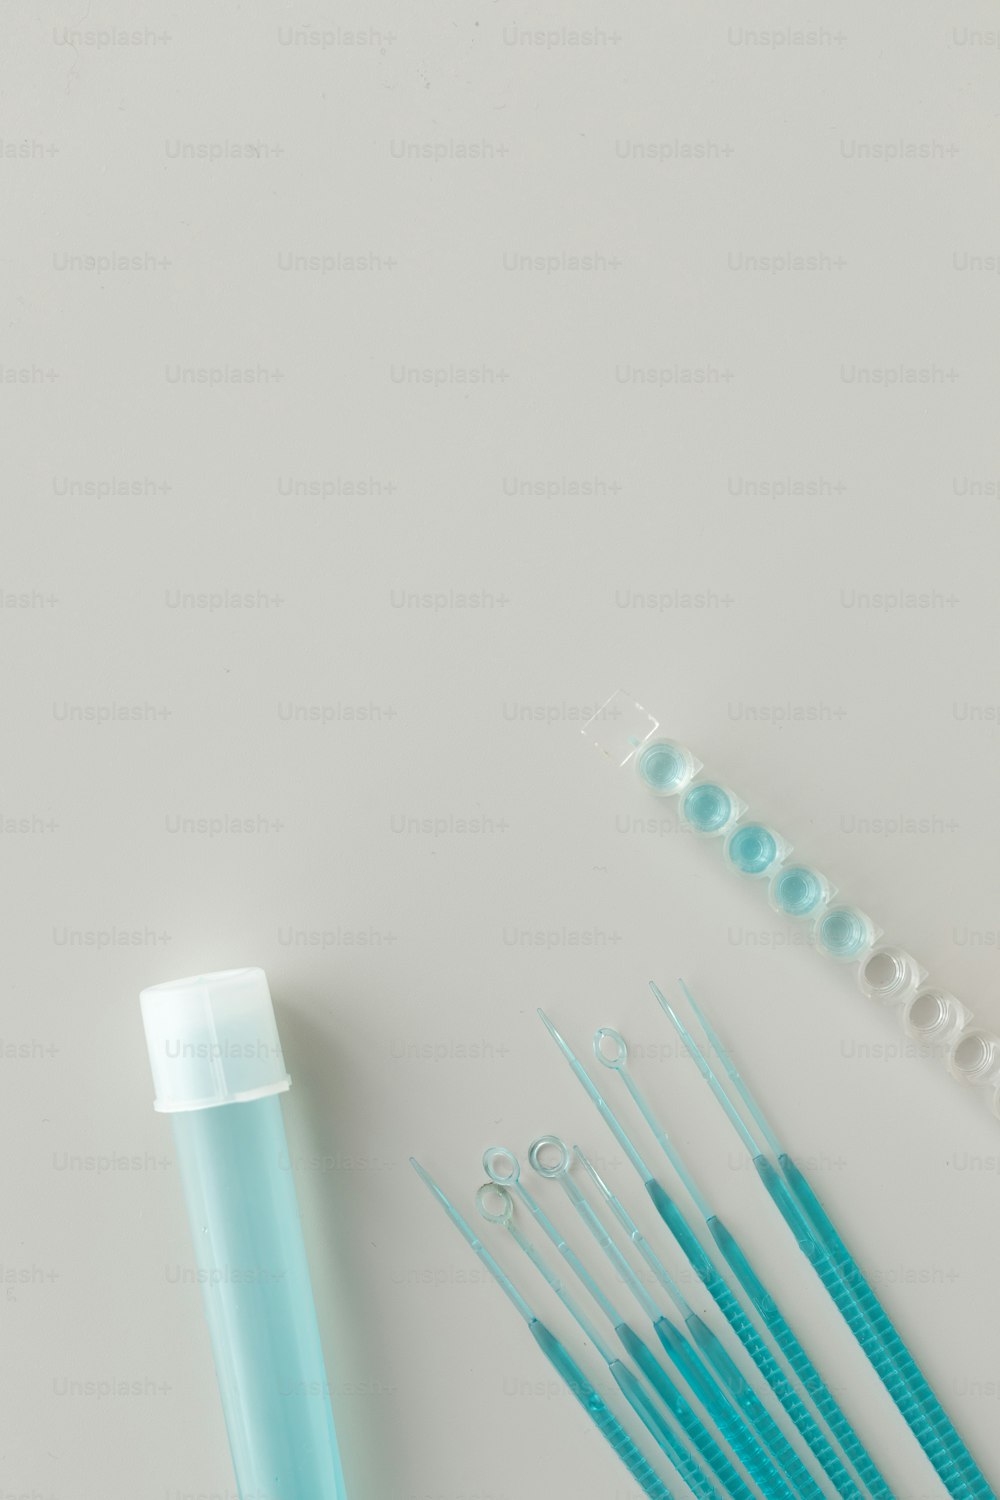 Un gruppo di spazzolini da denti blu seduti accanto a un tubetto di dentifricio